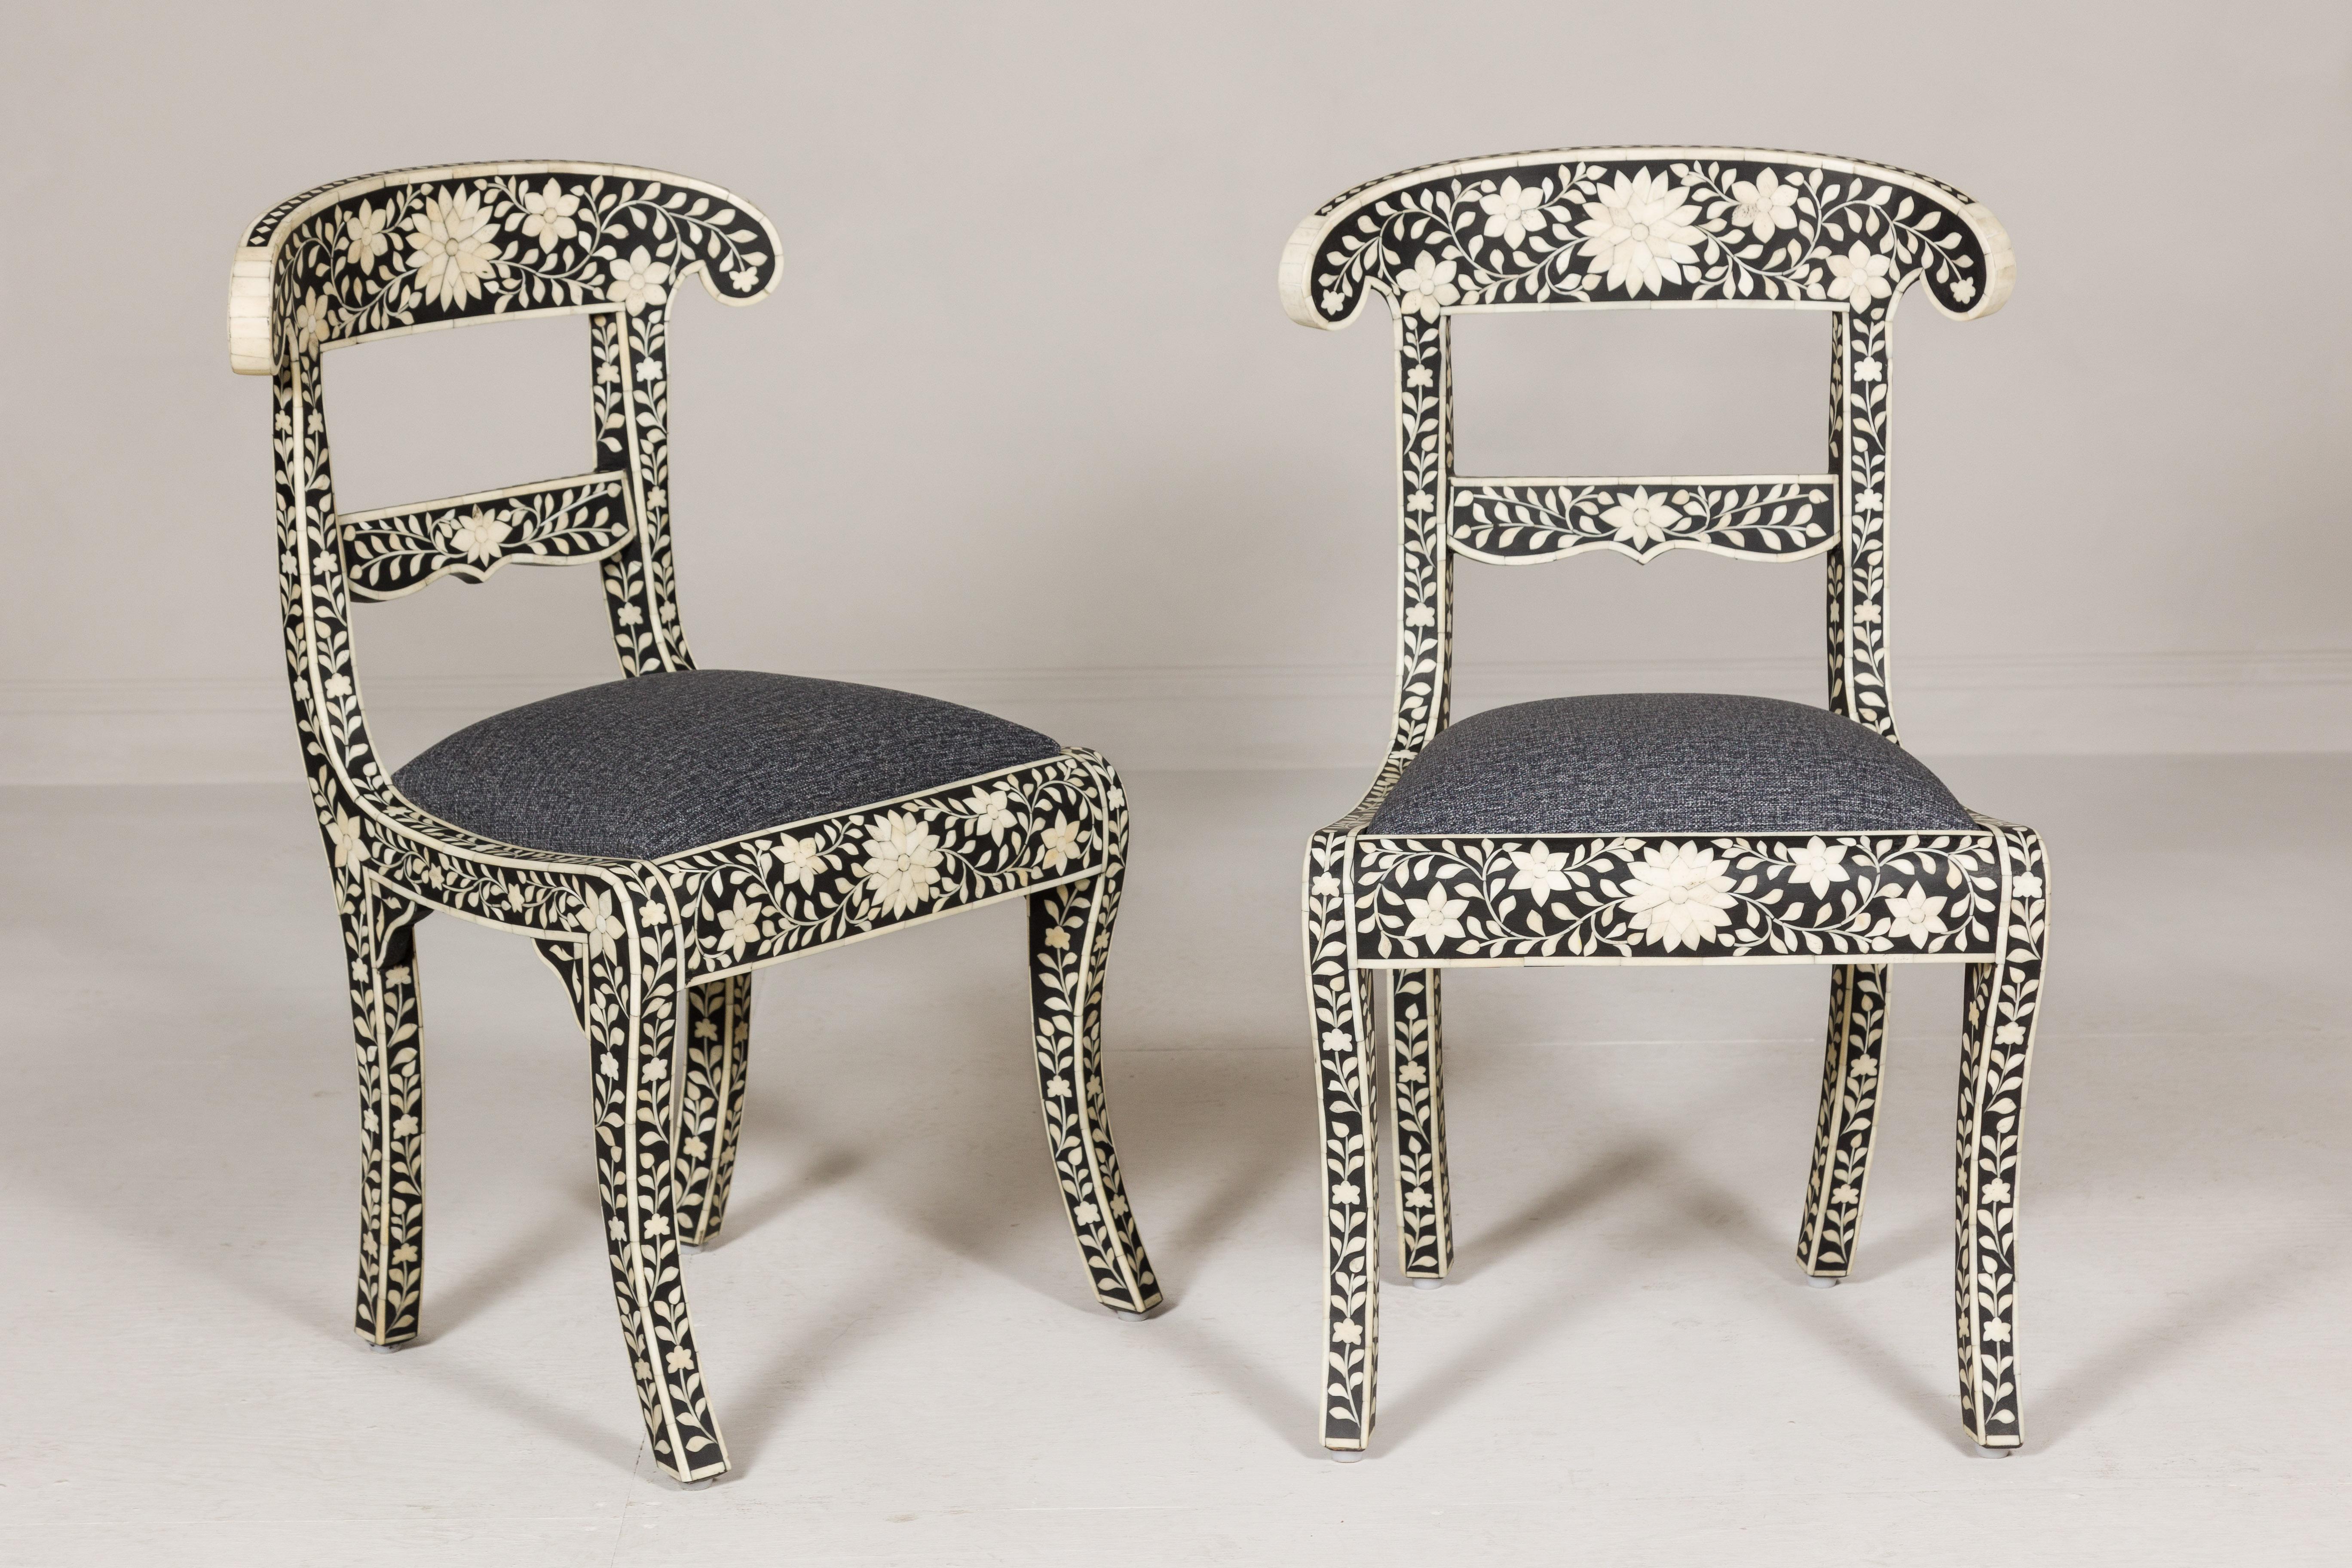 Paire de chaises d'appoint en bois de manguier de style anglo-indien avec décor floral incrusté d'os, tissu gris foncé et pieds sabres. Cette paire de chaises d'appoint en bois de manguier de style anglo-indien est une fusion entre l'allure